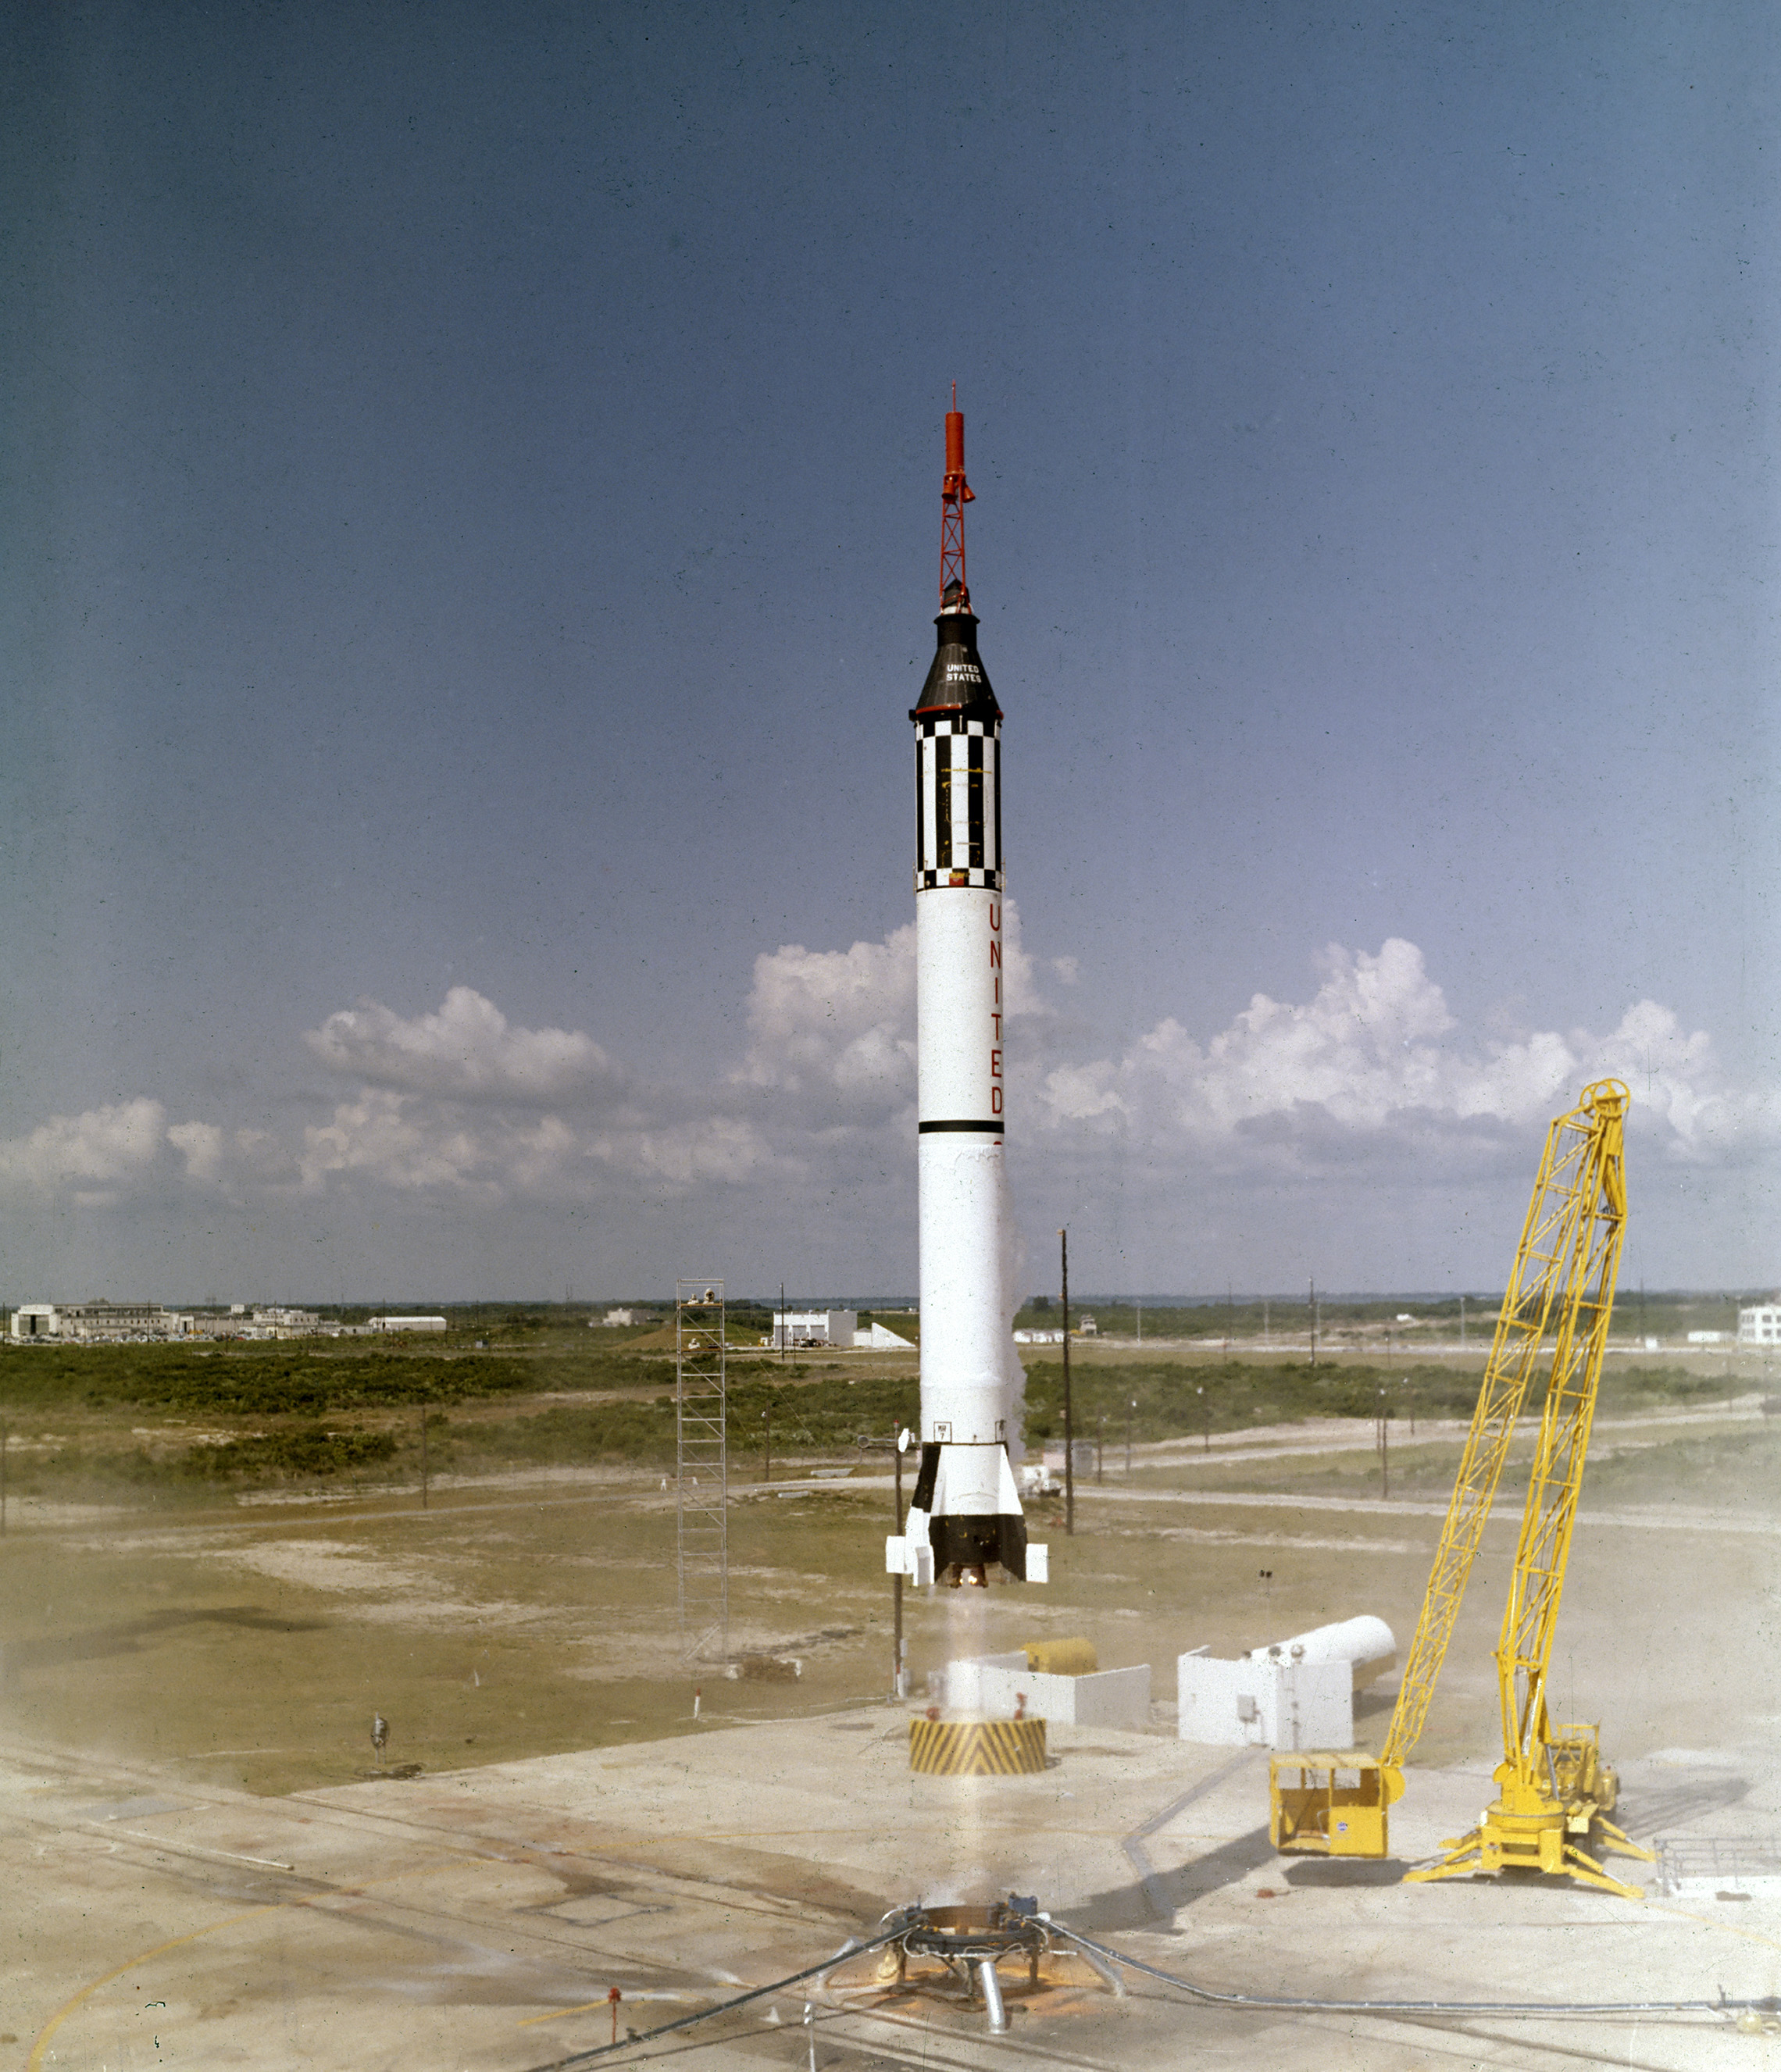 El astronauta Alan B. Shepard, Jr.despegó en la nave espacial Freedom 7 Mercury el 5 de mayo de 1961. Este tercer vuelo del vehículo Mercury-Redstone (MR-3), desarrollado por el Dr. Wernher von Braun y el equipo rocket en Huntsille, Alabama, fue la primera misión espacial tripulada para los Estados Unidos. Durante el vuelo suborbital de 15 minutos, Shepard alcanzó una altitud de 115 millas y viajó 302 millas hacia abajo. (NASA)